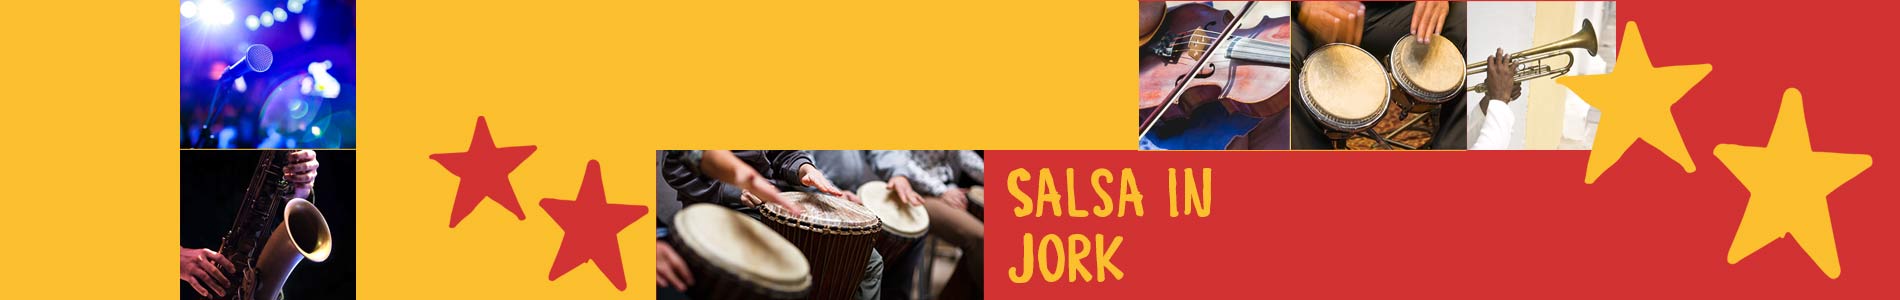 Salsa in Jork – Salsa lernen und tanzen, Tanzkurse, Partys, Veranstaltungen